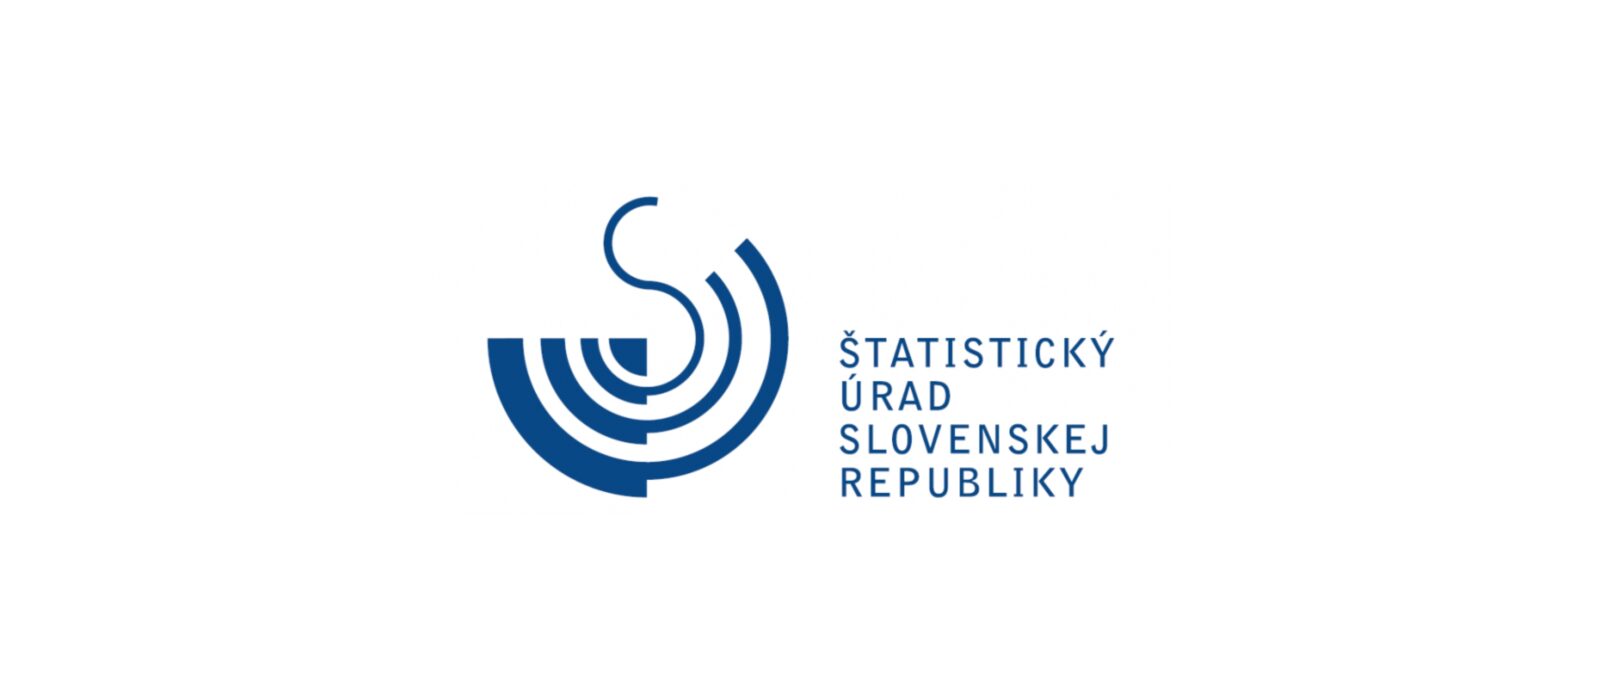 Štatistický úrad Slovenskej republiky Servare et Manere